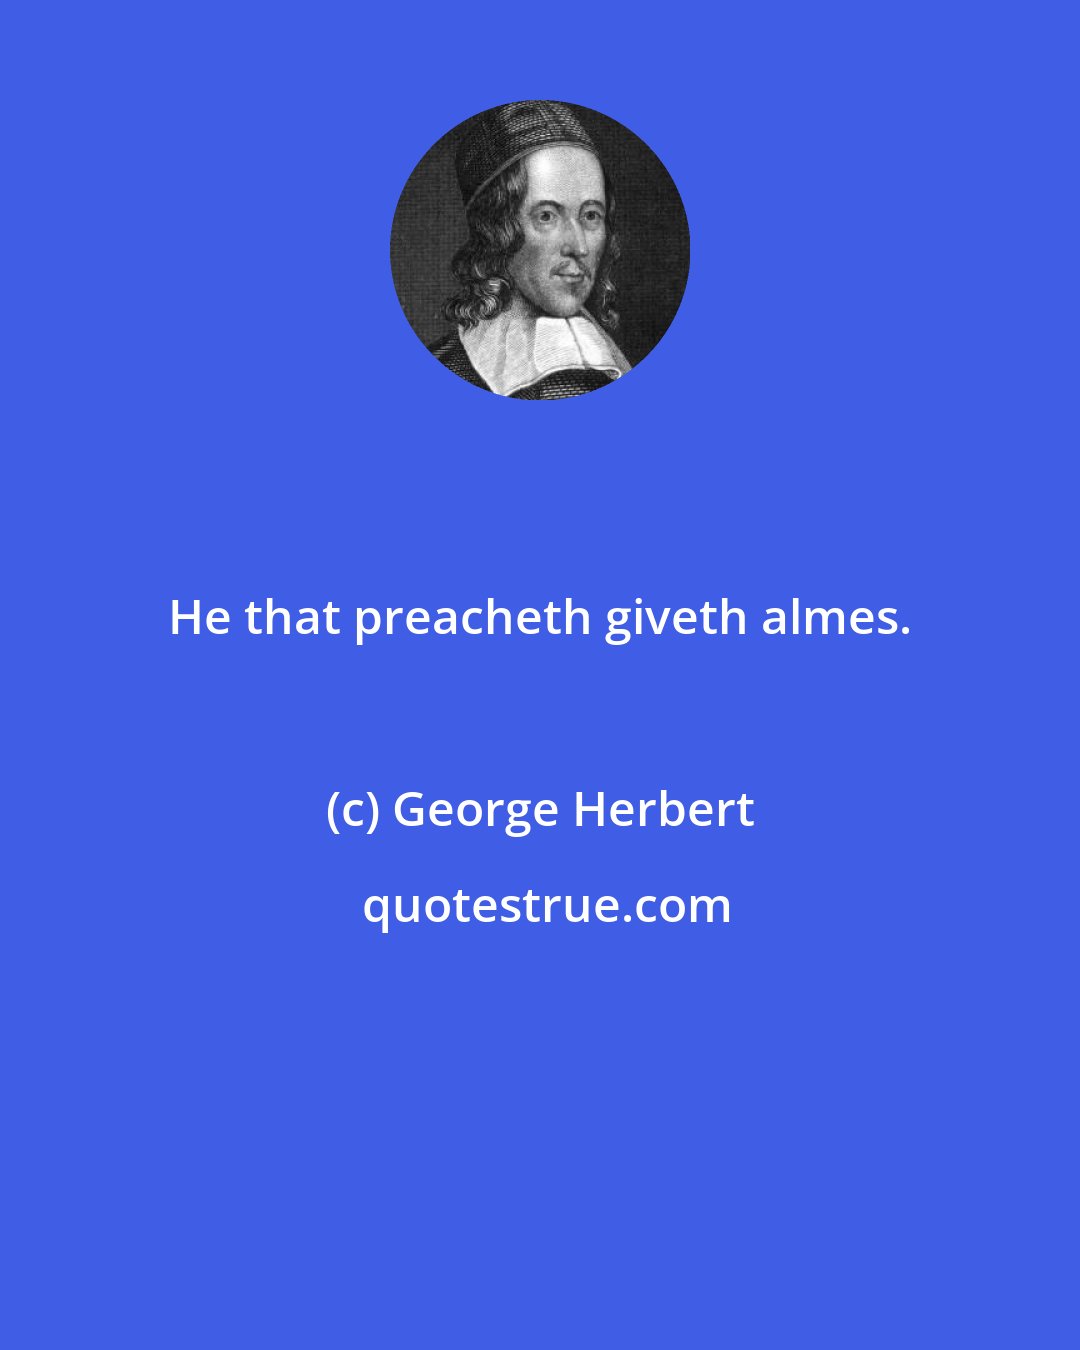 George Herbert: He that preacheth giveth almes.